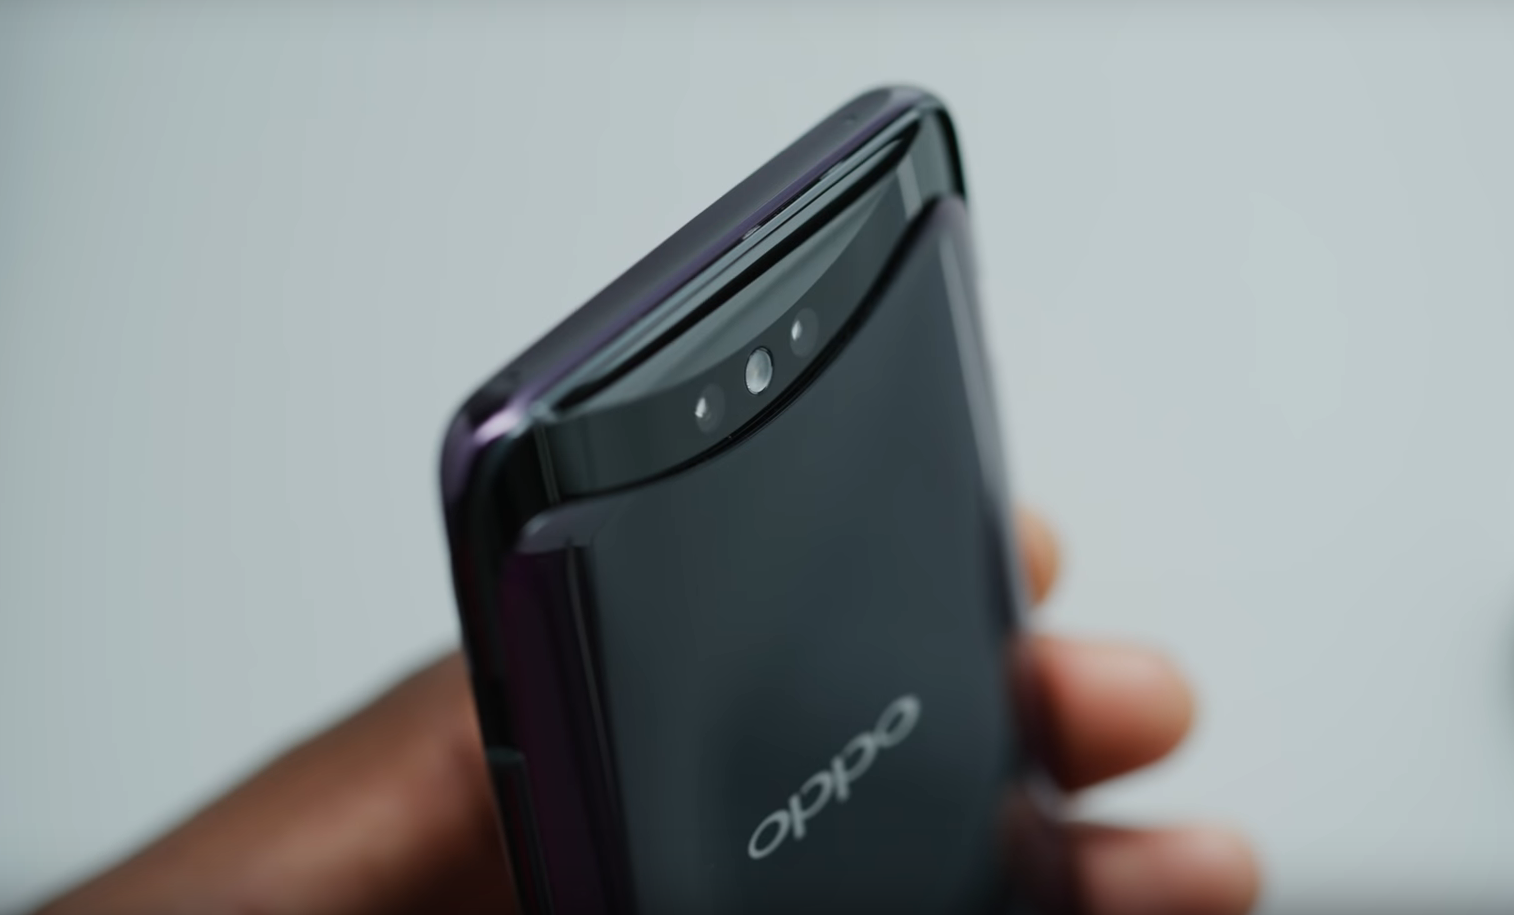 Vue d'ensemble des avantages et des inconvénients du smartphone Oppo Find X